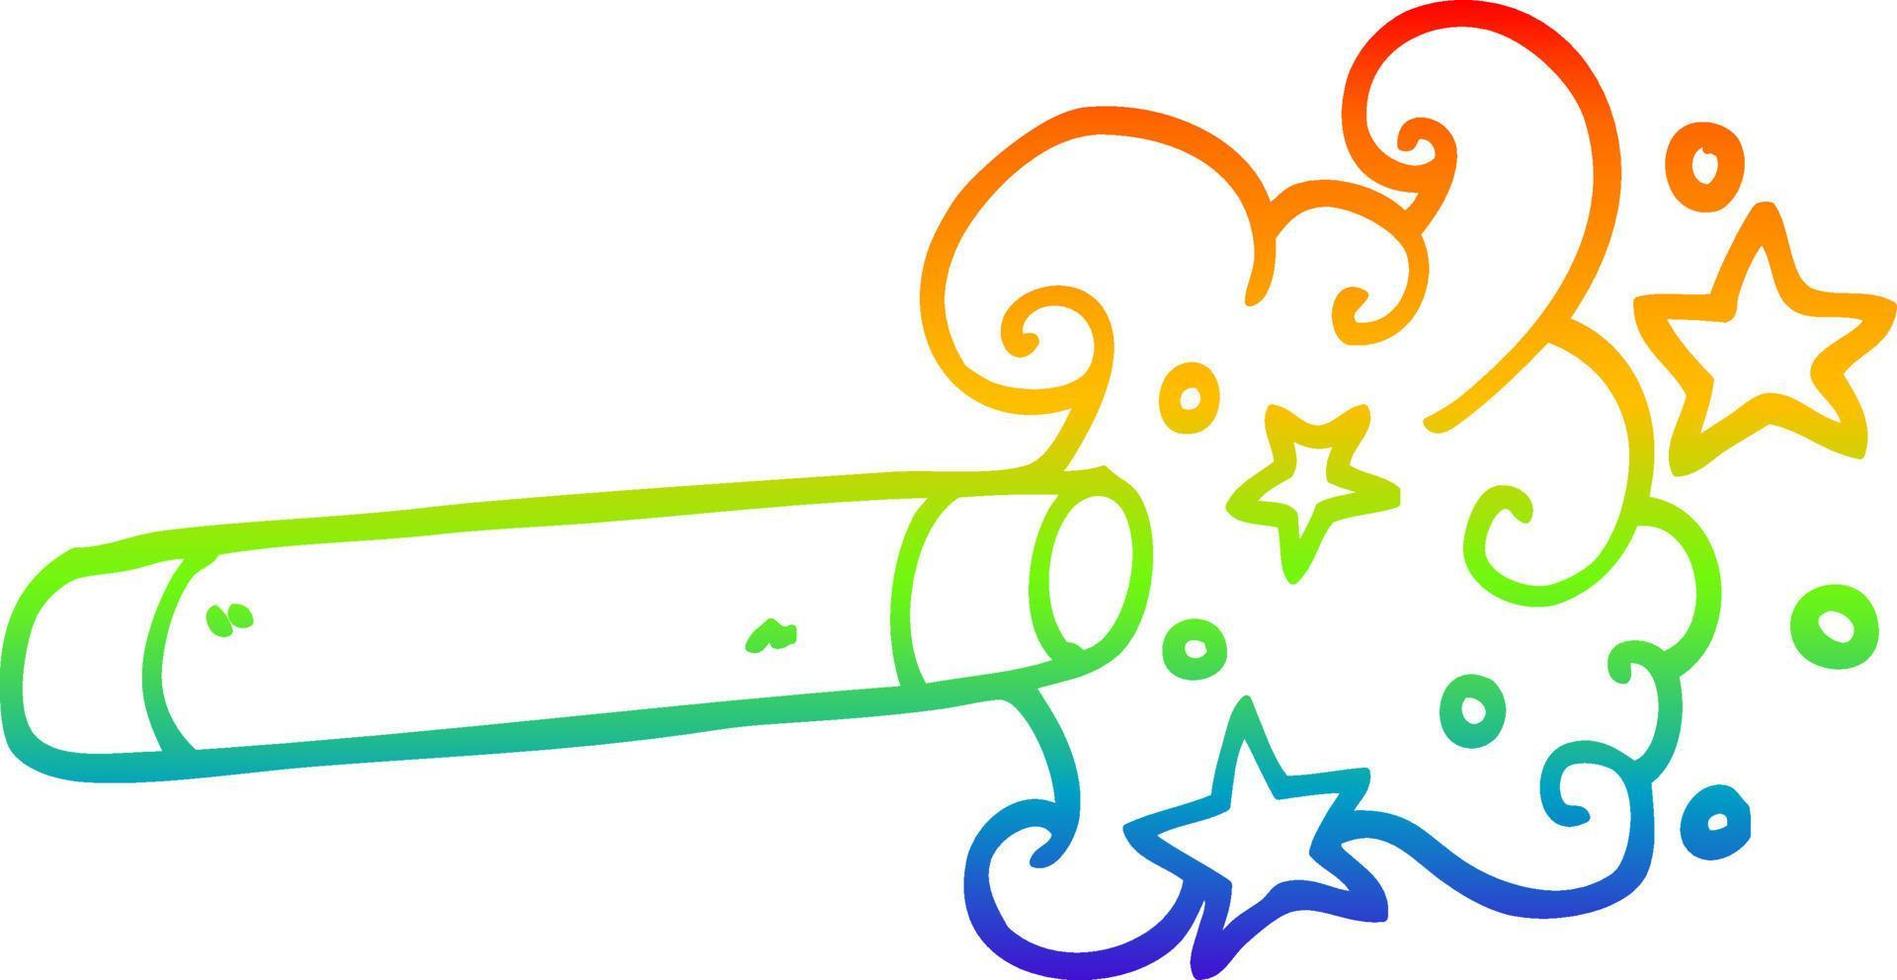 varinha mágica de desenho de linha de gradiente de arco-íris vetor